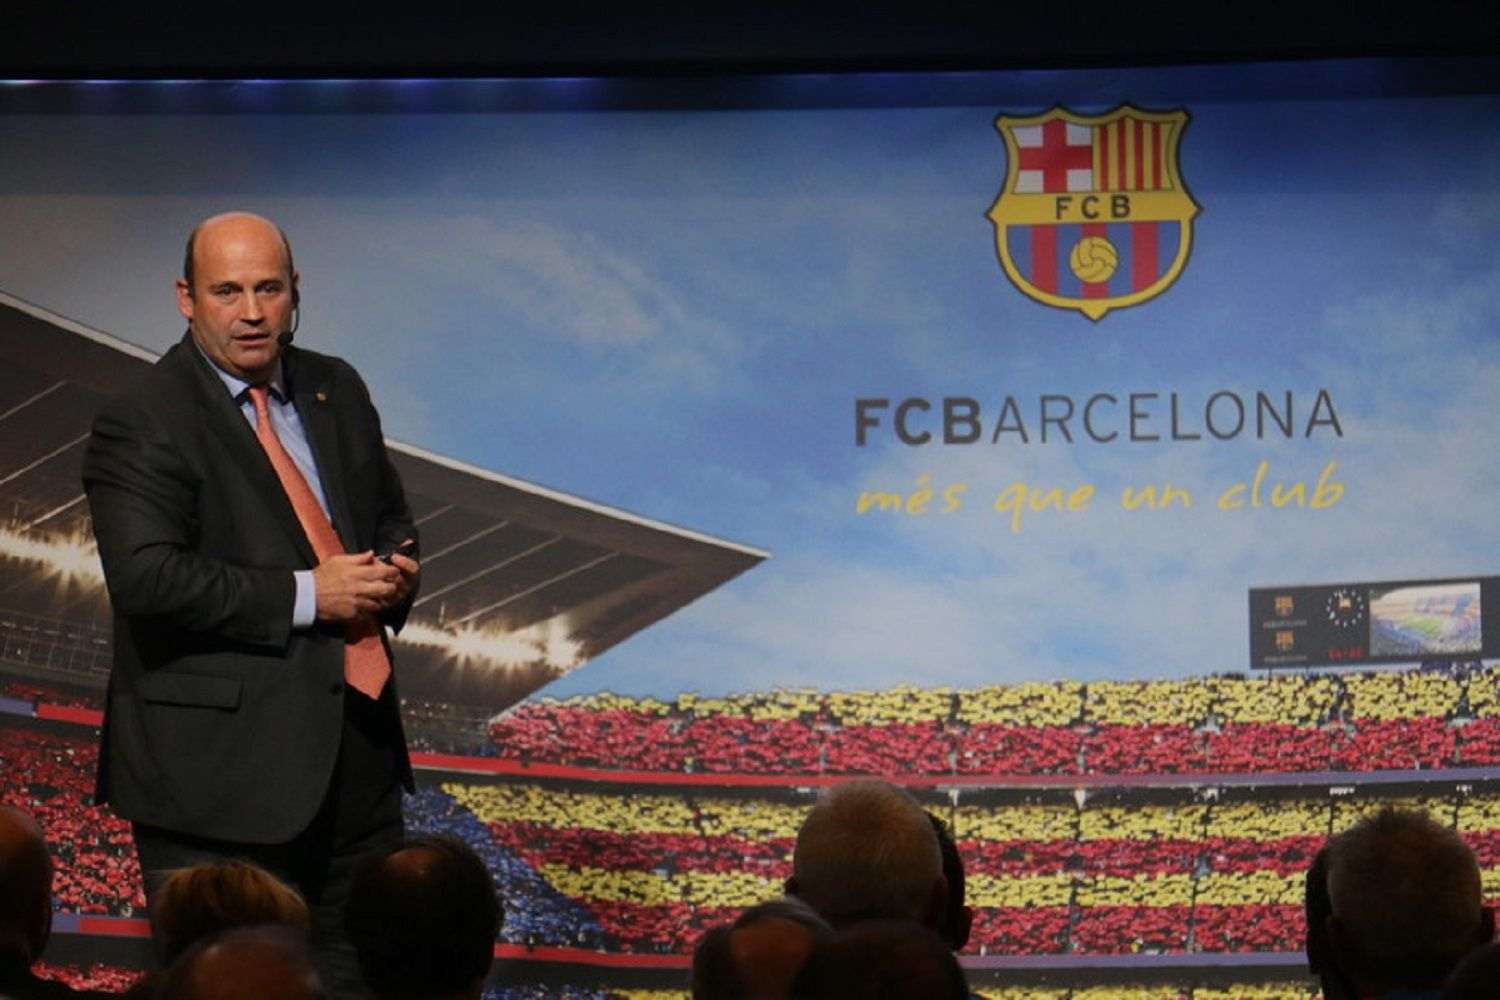 El Barça despide a Òscar Grau, hasta ahora CEO del club